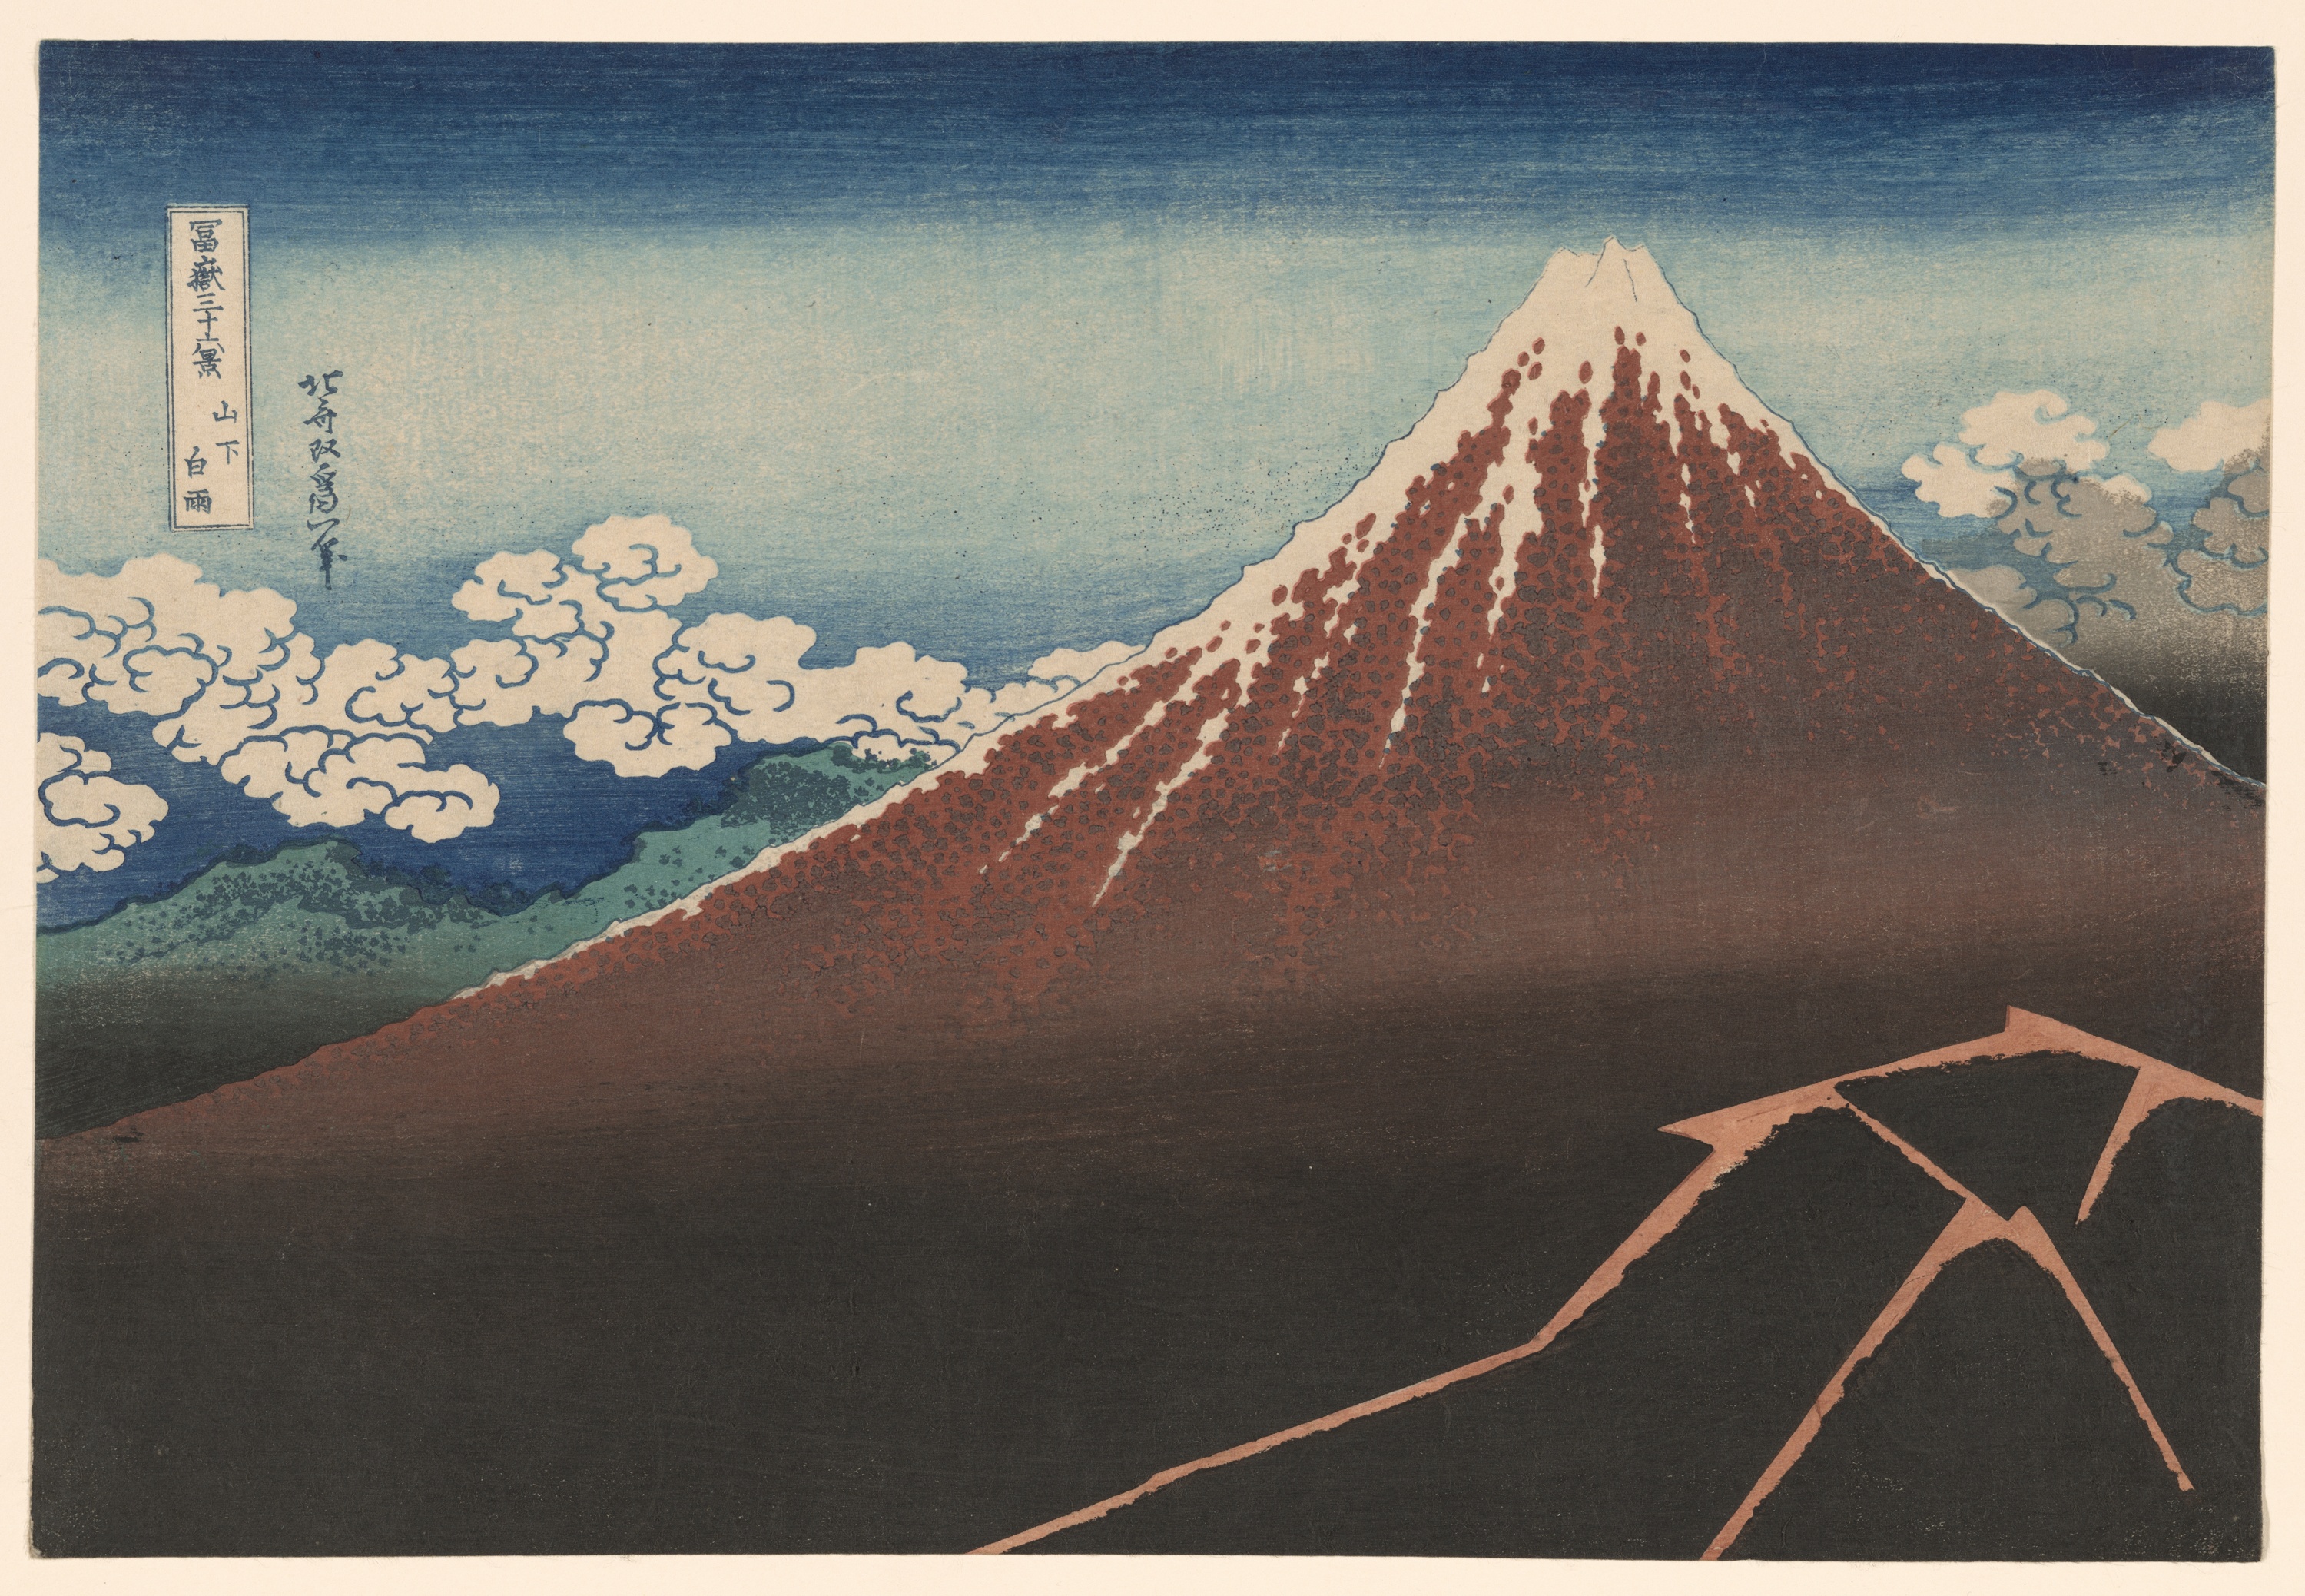 عاصفة رعدية تحت القمة by Katsushika Hokusai - حوالي 1830-1832 - الأبعاد: 25.72 × 38 